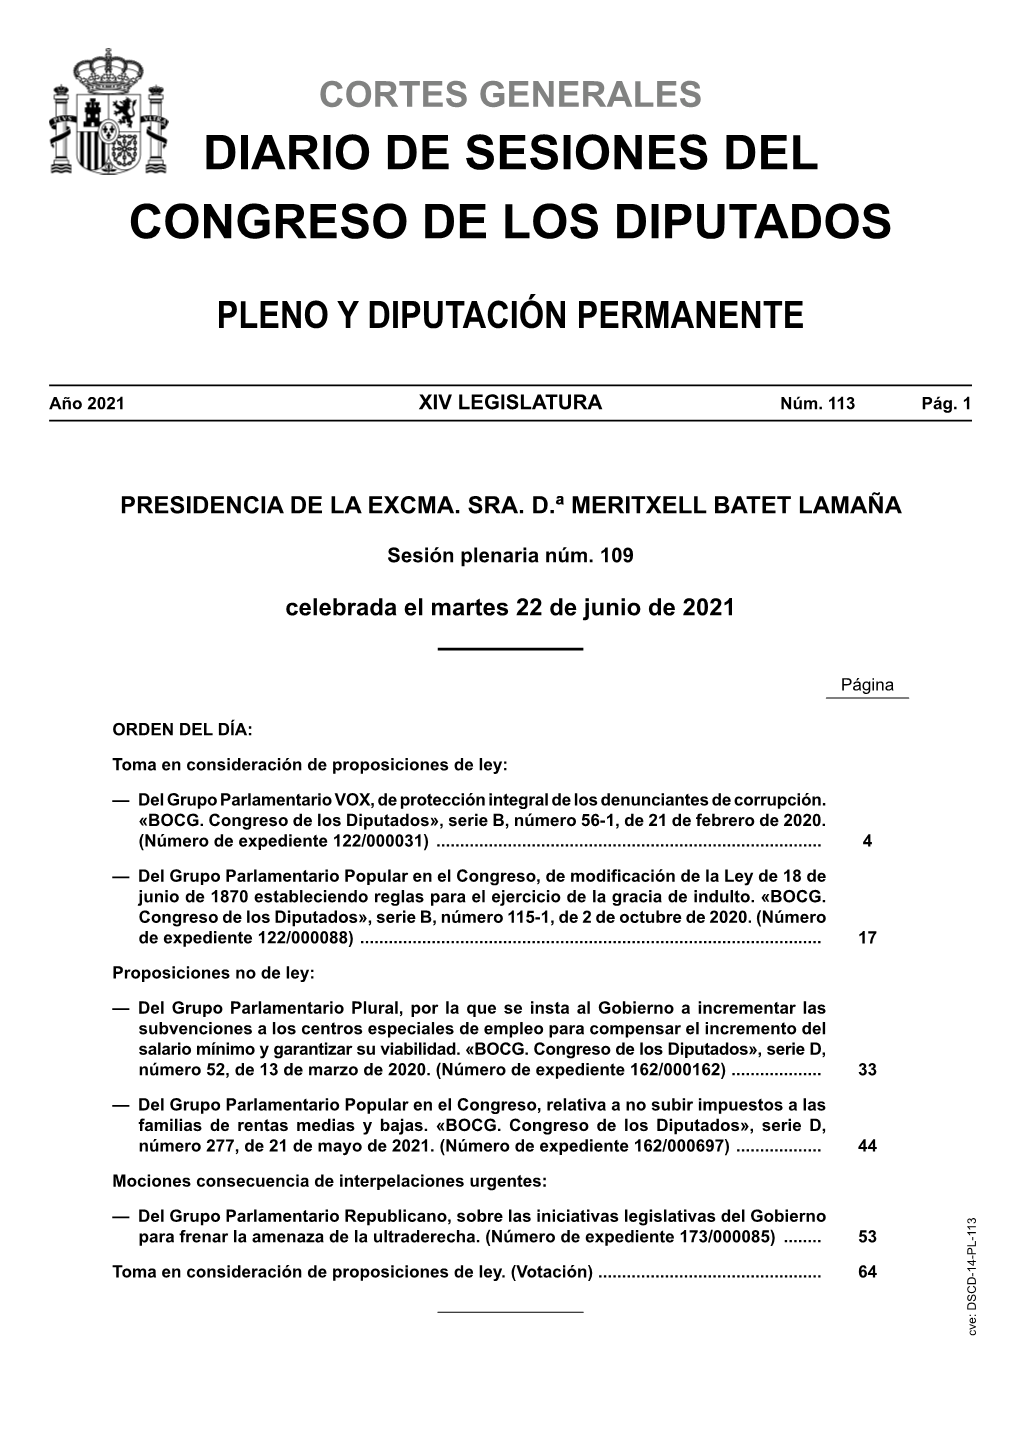 Diario De Sesiones De Pleno Y Diputación Permanente